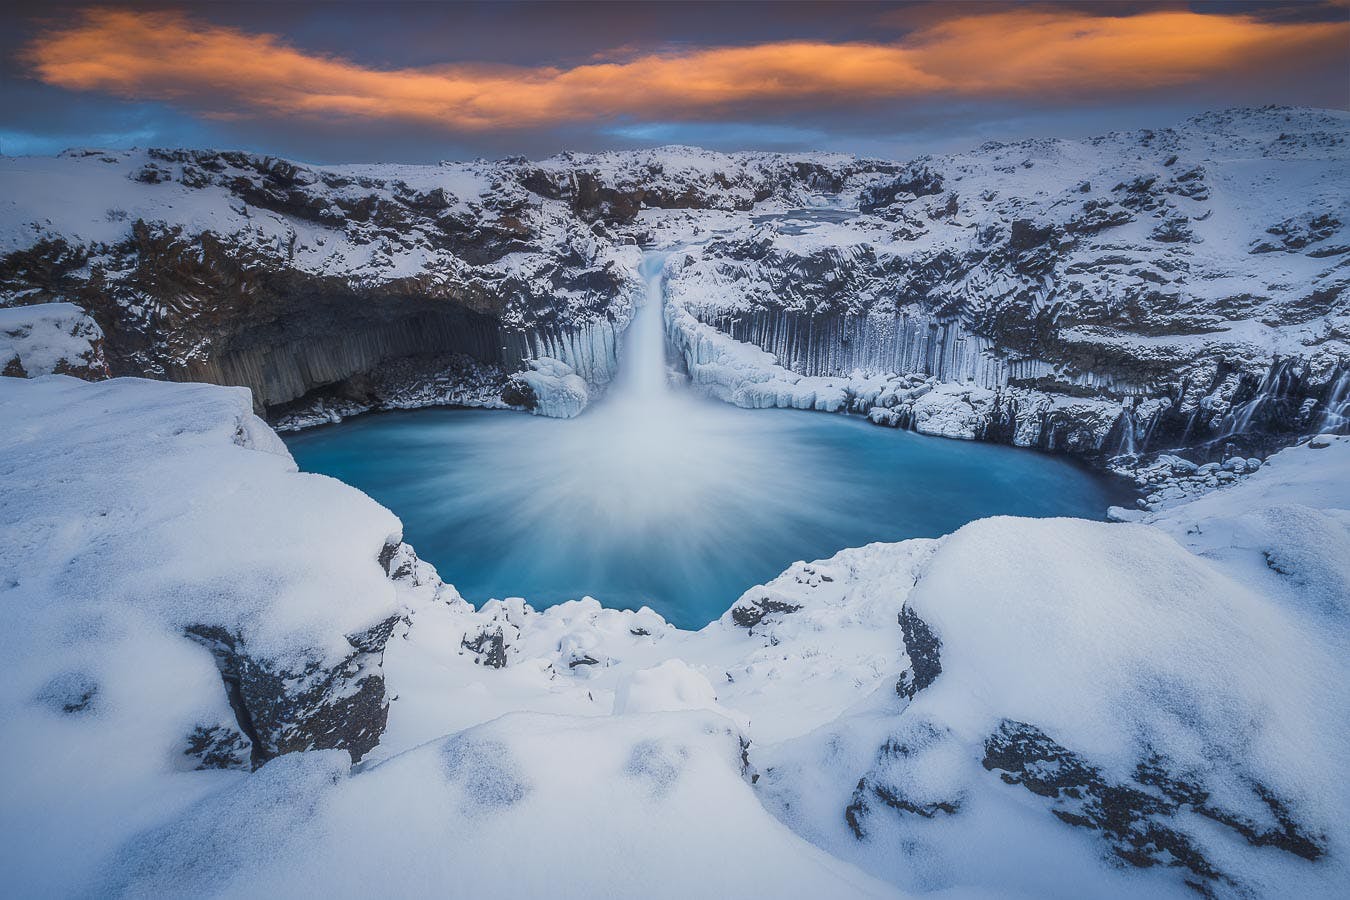 アイスランドの冬景色を極める 14日間の写真ワークショップ Iceland Photo Tours